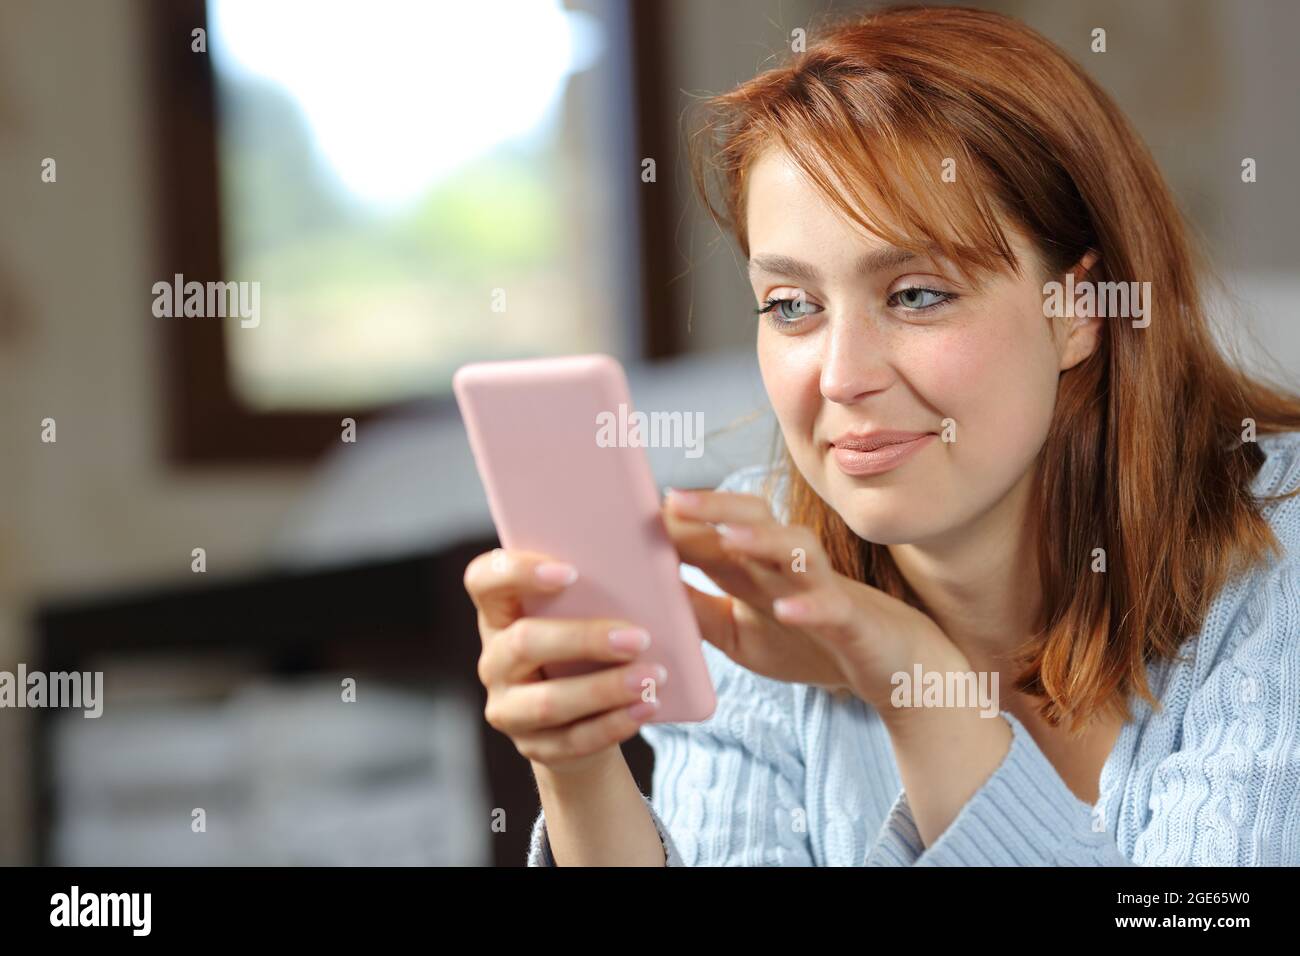 Eine zufriedene Frau, die zuhause im Schlafzimmer nach einem Smartphone gesucht hat Stockfoto